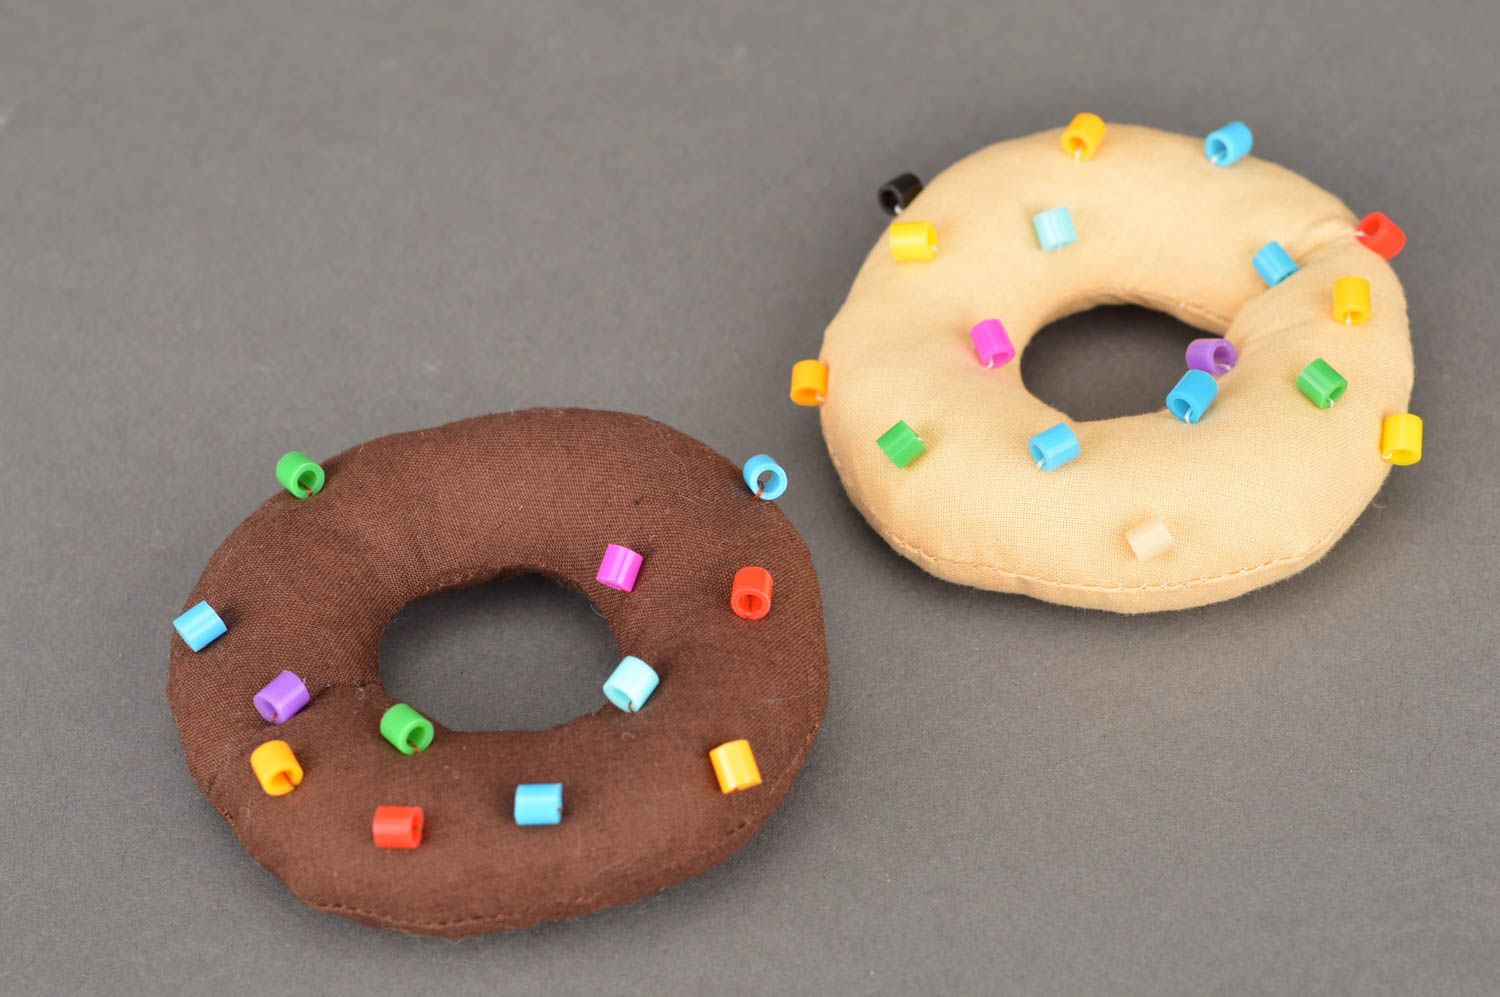 Deko Donuts aus Stoff 2 Stück mit dekorativen Elementen in Form von Streusel foto 2